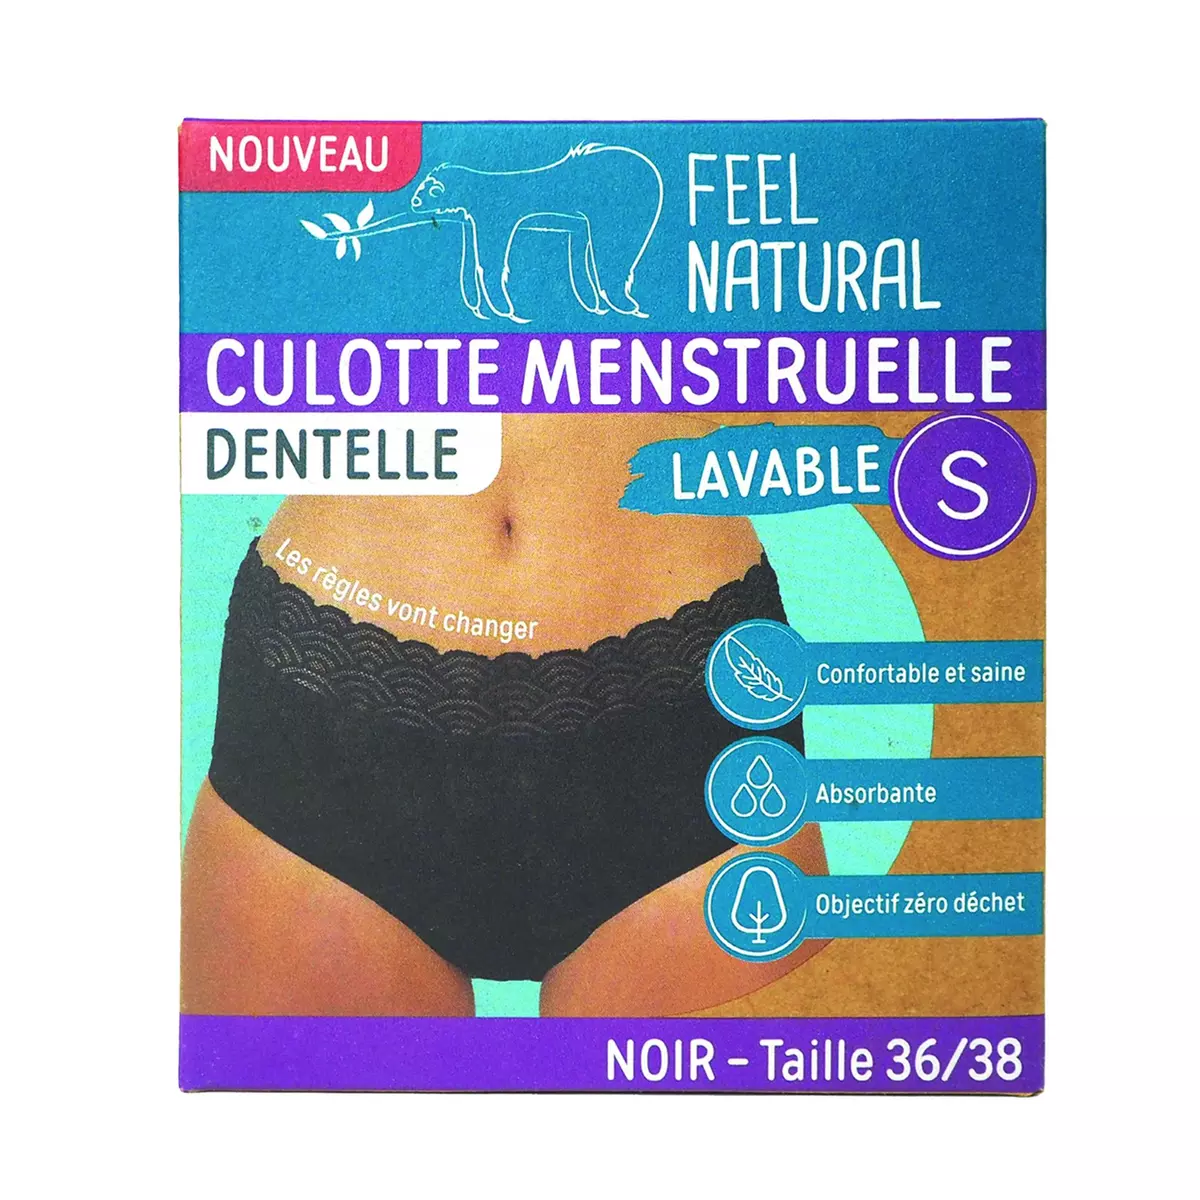 FEEL NATURAL Culotte menstruelle en dentelle noir lavable taille S 36-38 1 pièce